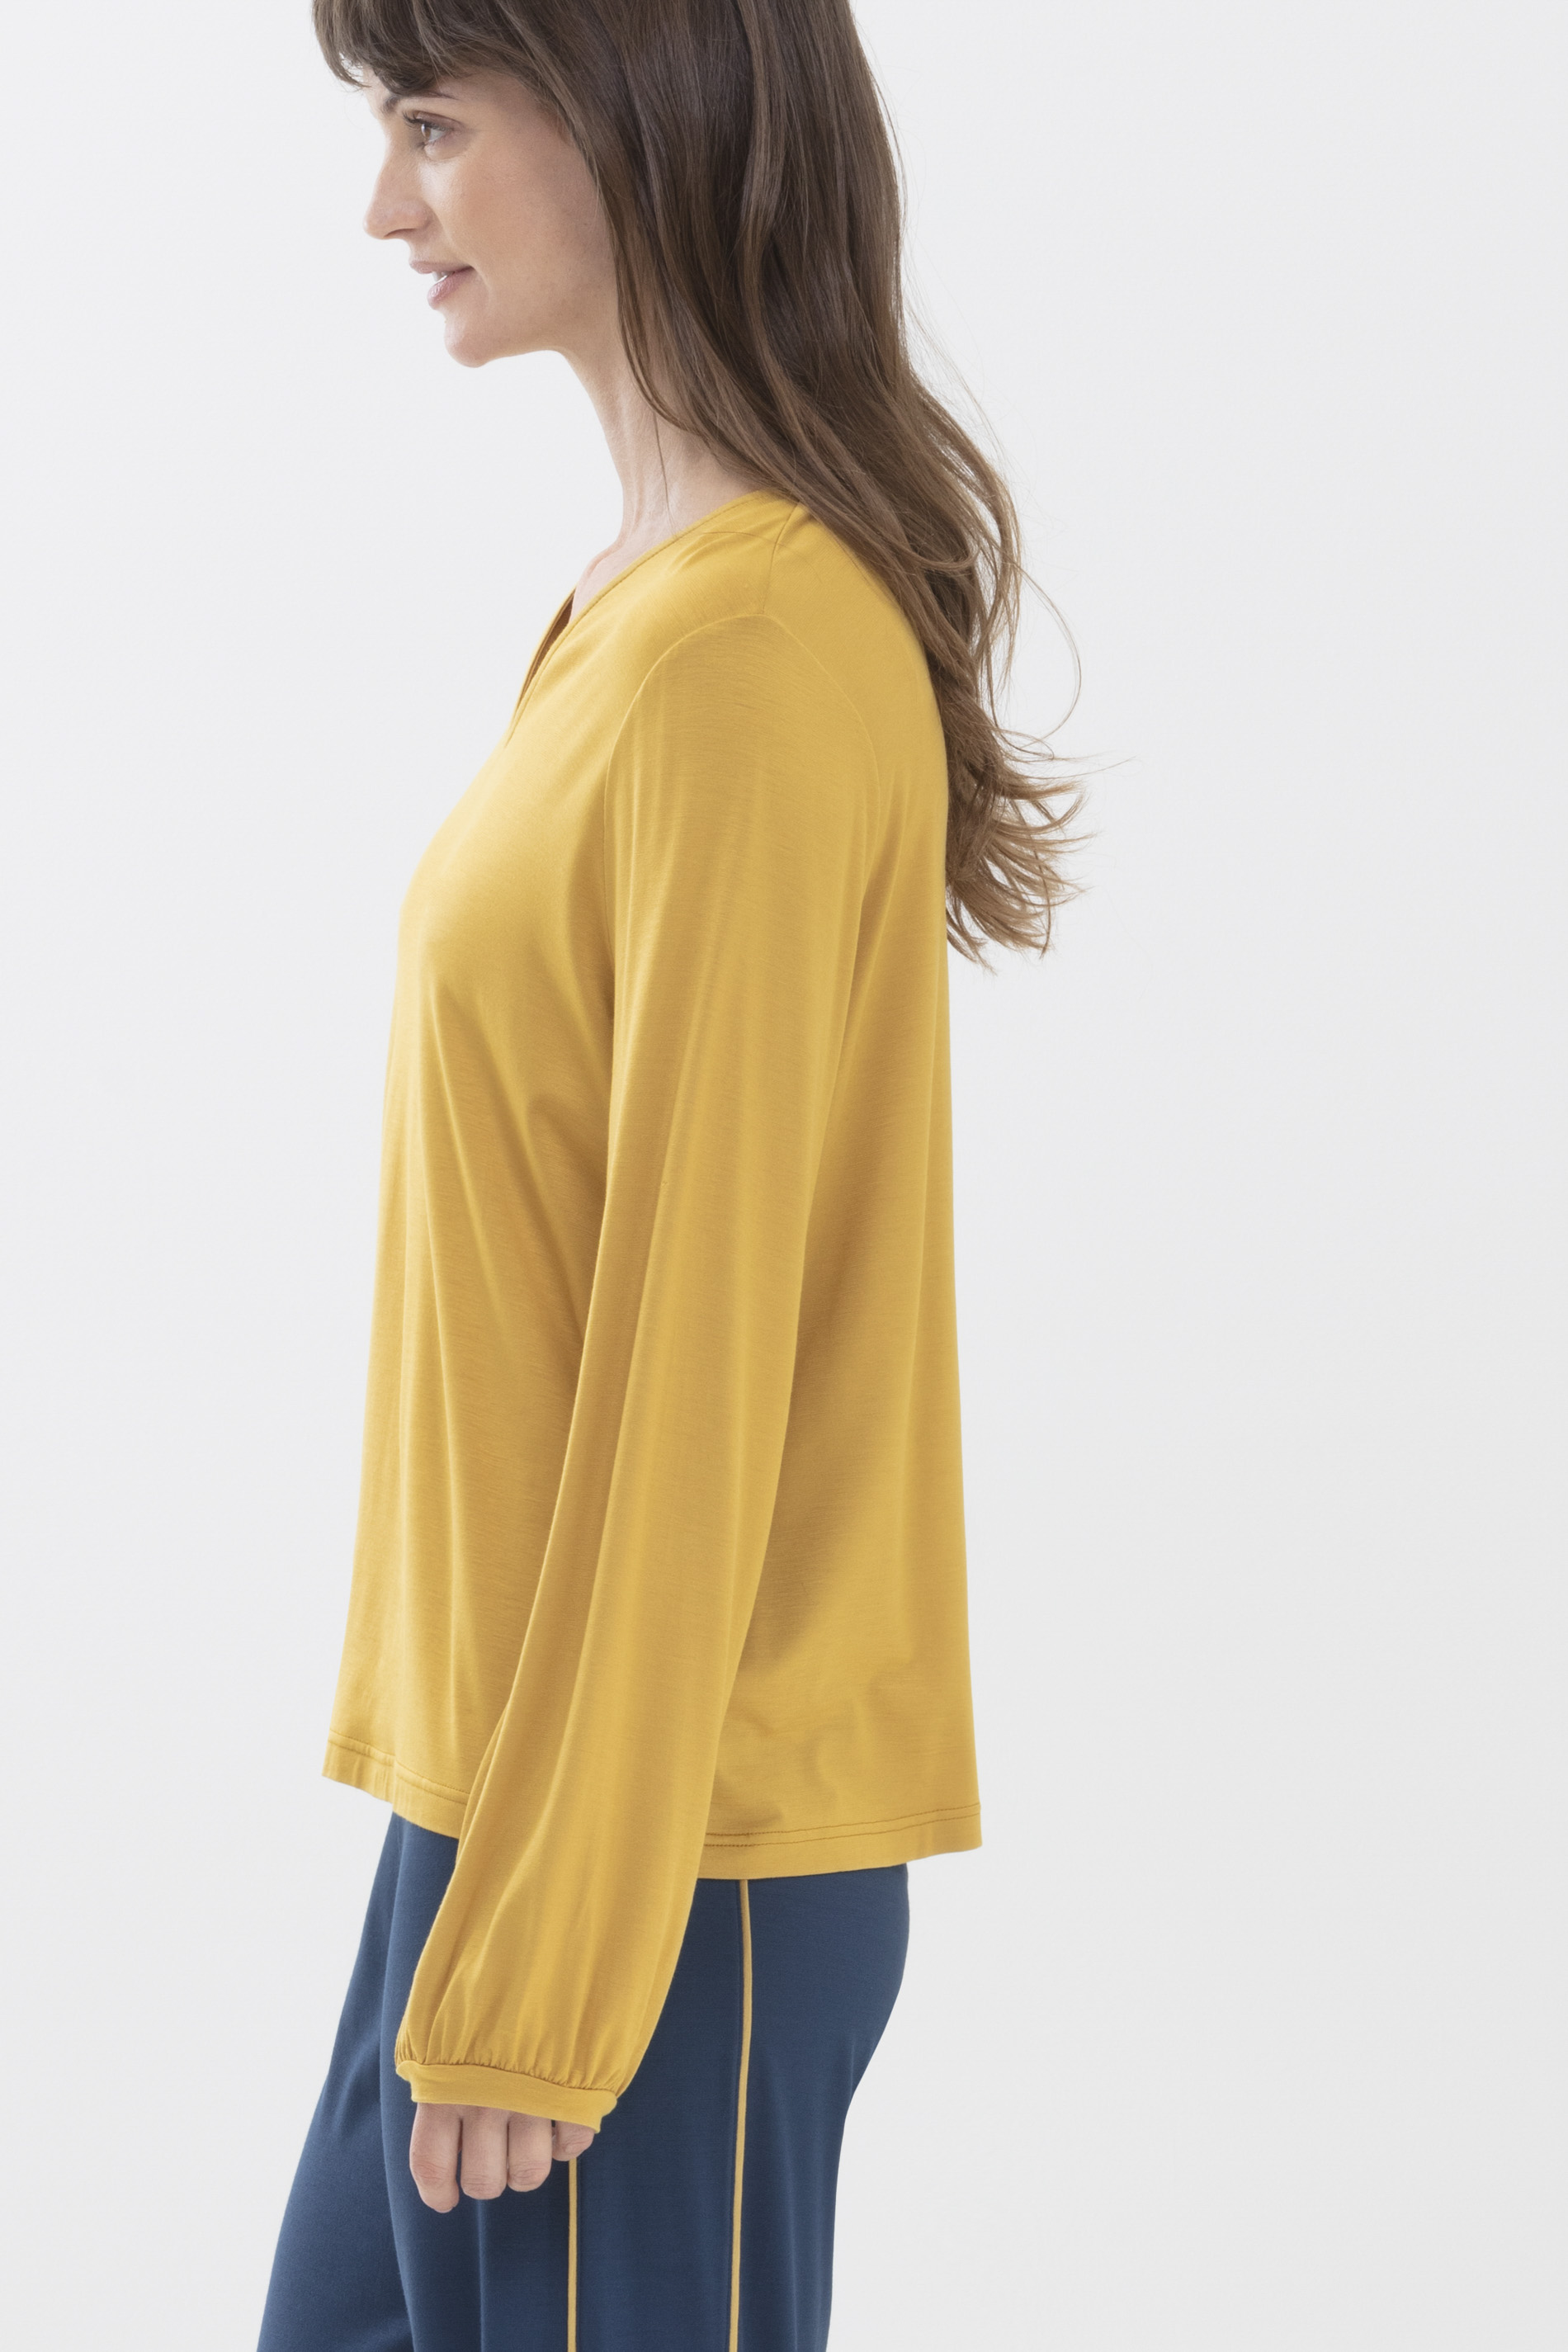 Shirt Wintergold Serie Alena Detailweergave 02 | mey®